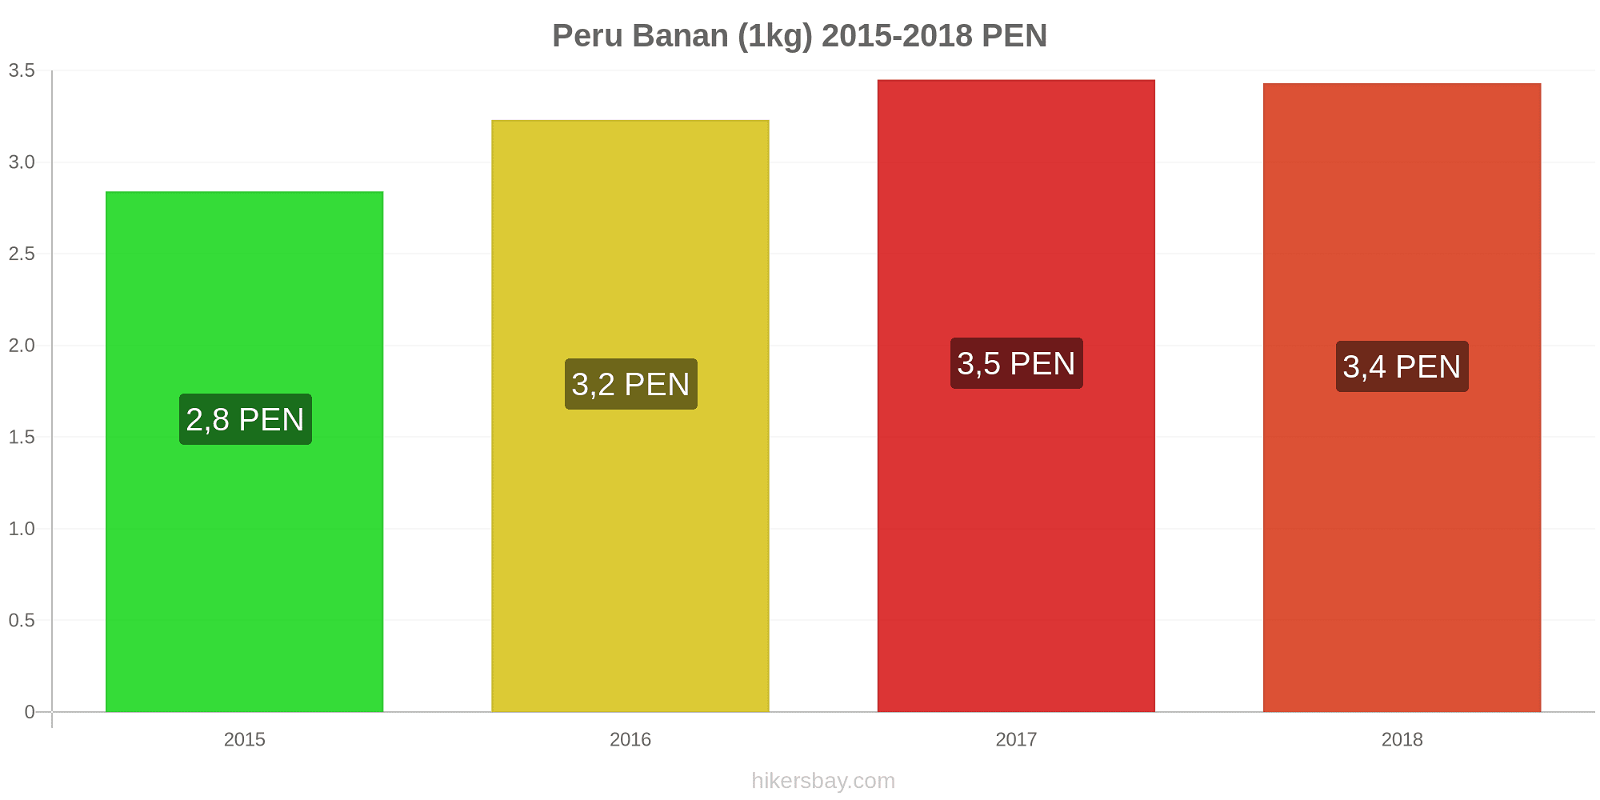 Peru prisændringer Bananer (1kg) hikersbay.com